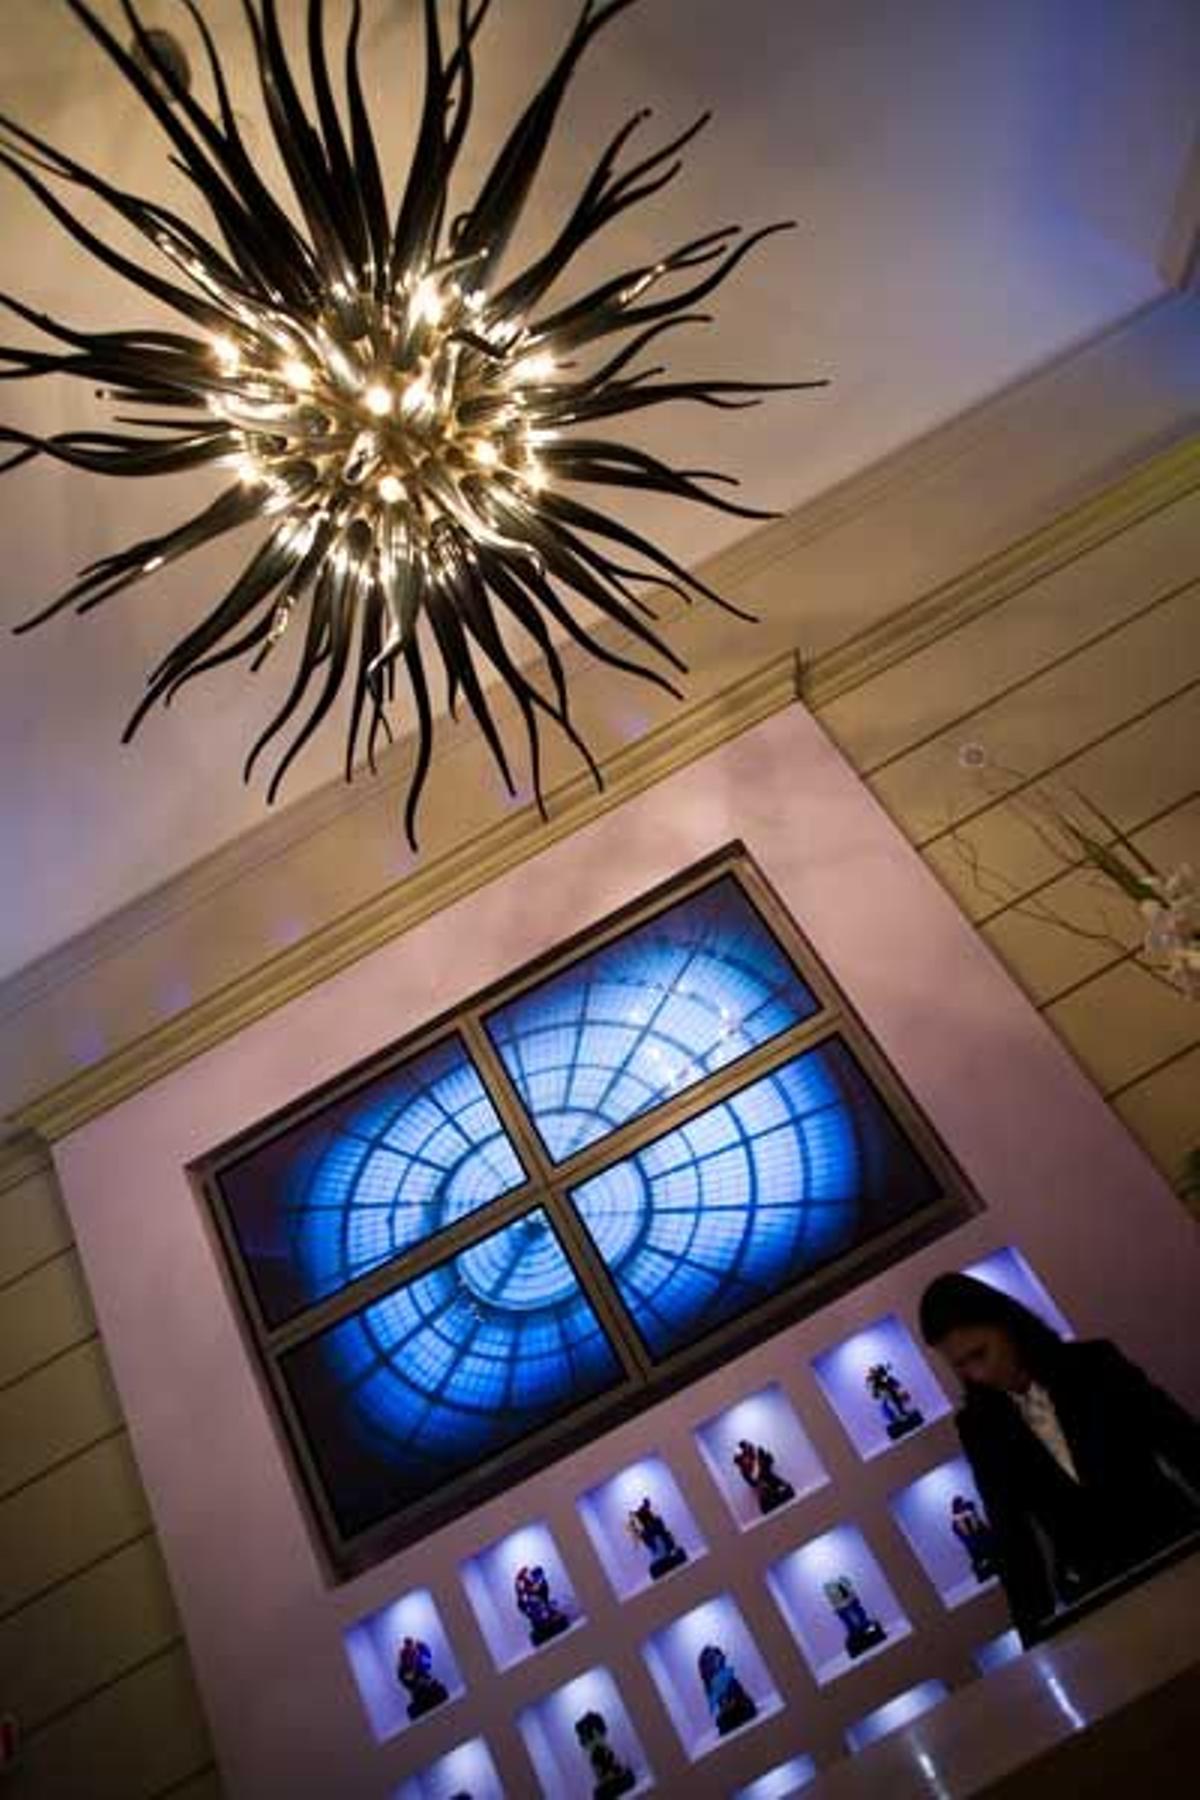 El lujoso Seven Stars Galleria es el único hotel de siete estrellas de Europa. El hall de este hotel está decorado con una lámpara de Murano en forma de medusa.